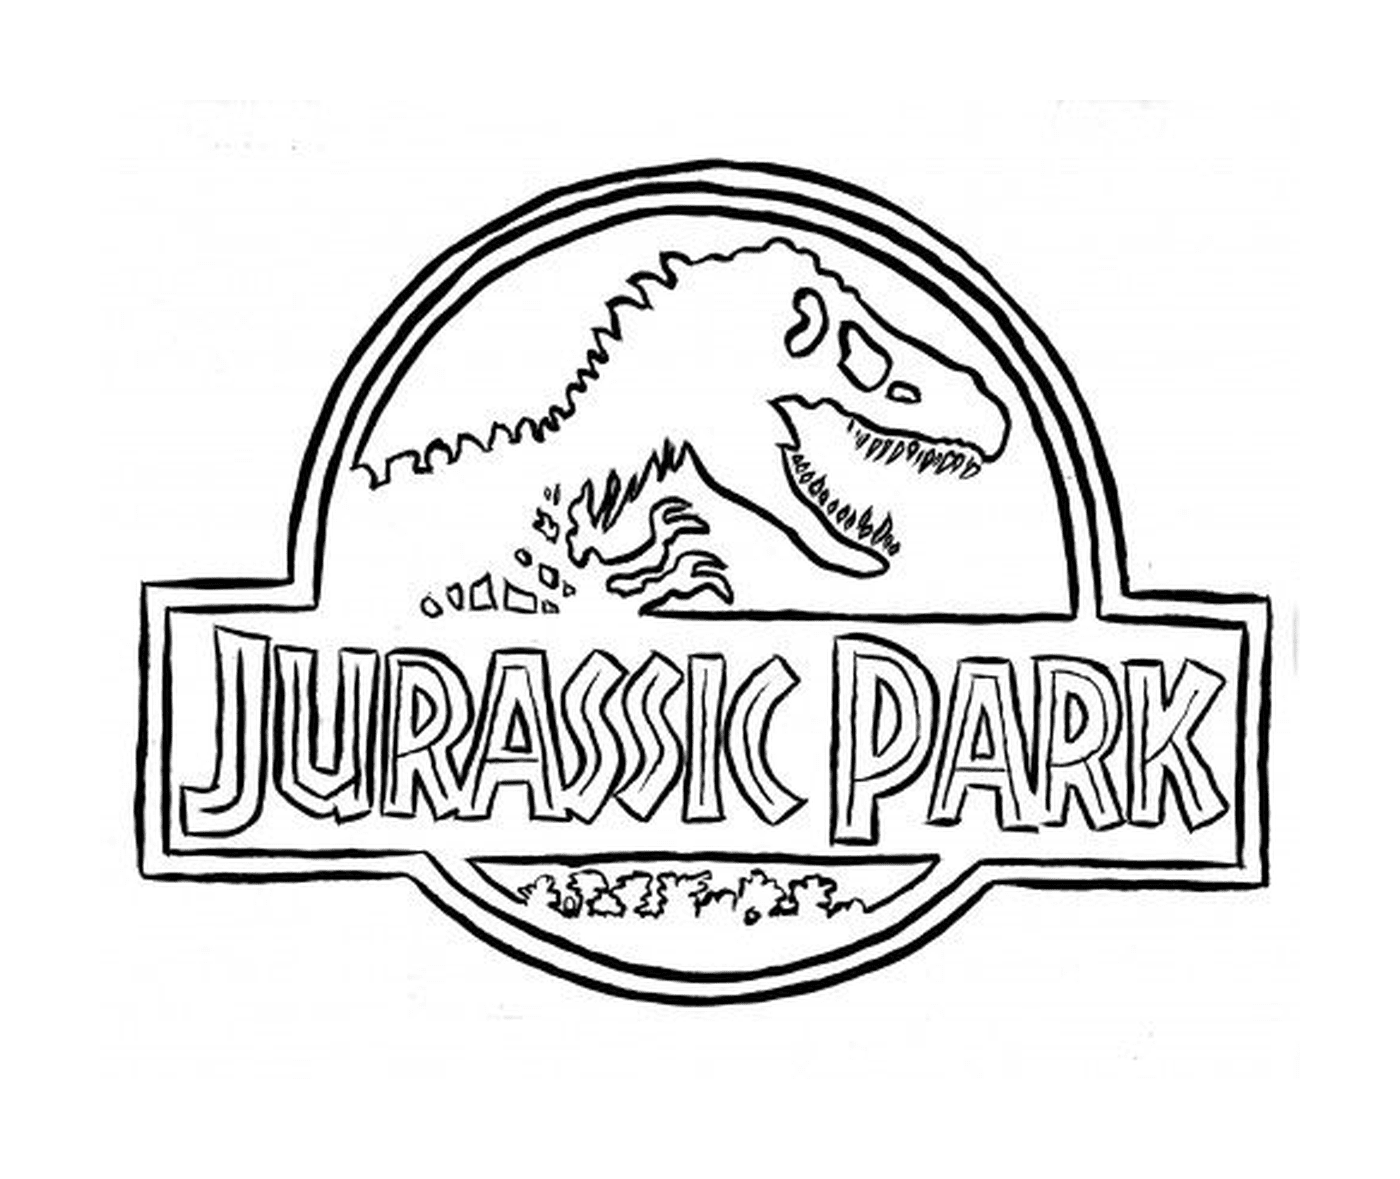  Logo Jurassic Park, simbolo mitico 